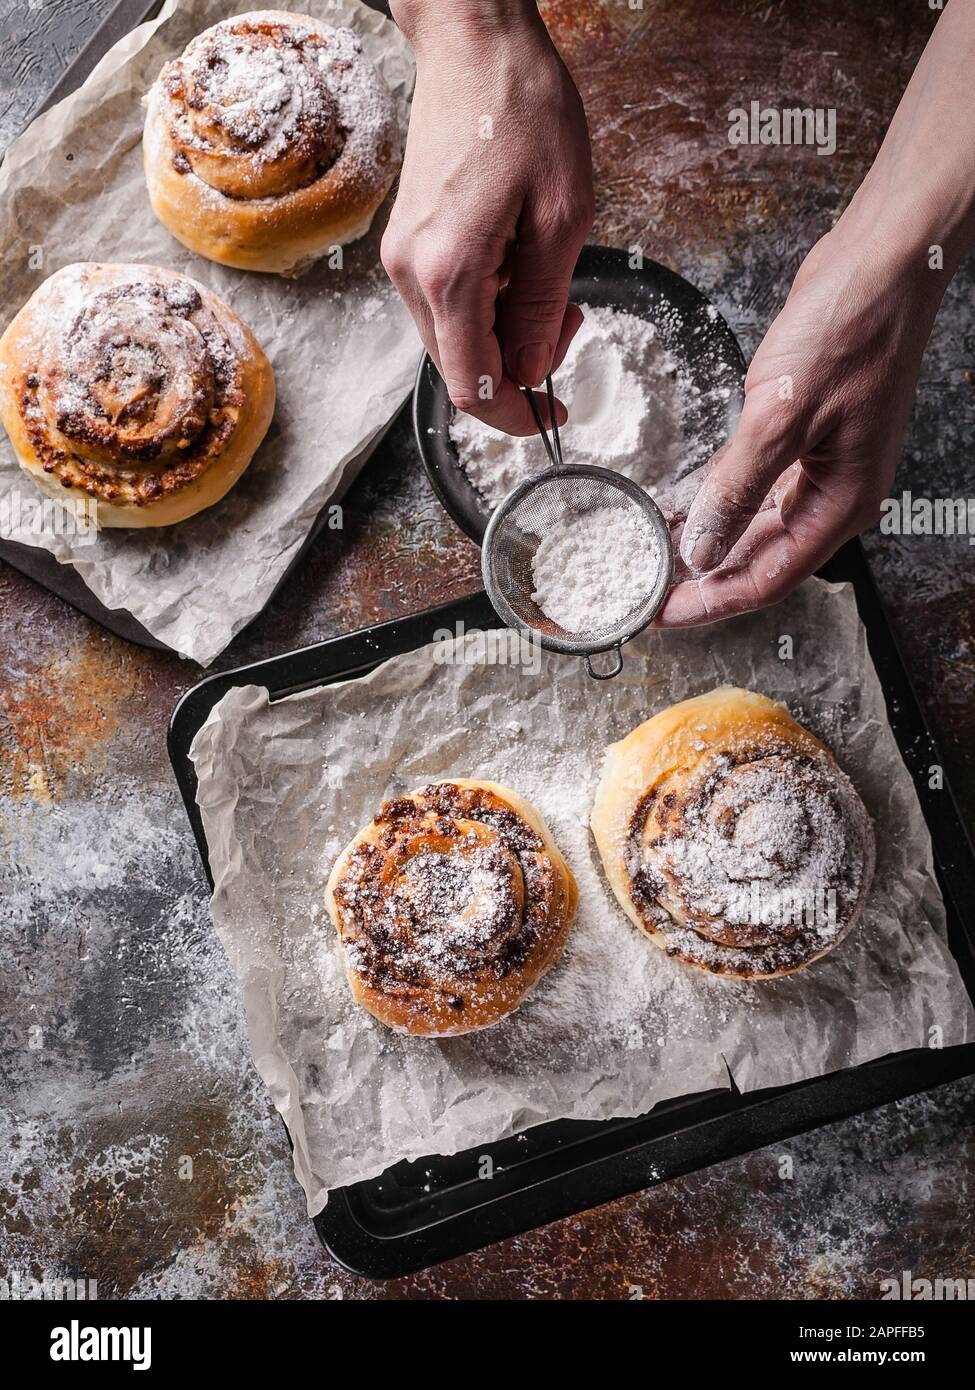 Les mains féminines saupoudrer de sucre en poudre avec des petits pains à la cannelle maison et de la crème au chocolat. Cuisine scandinave. Style Hyugge Banque D'Images